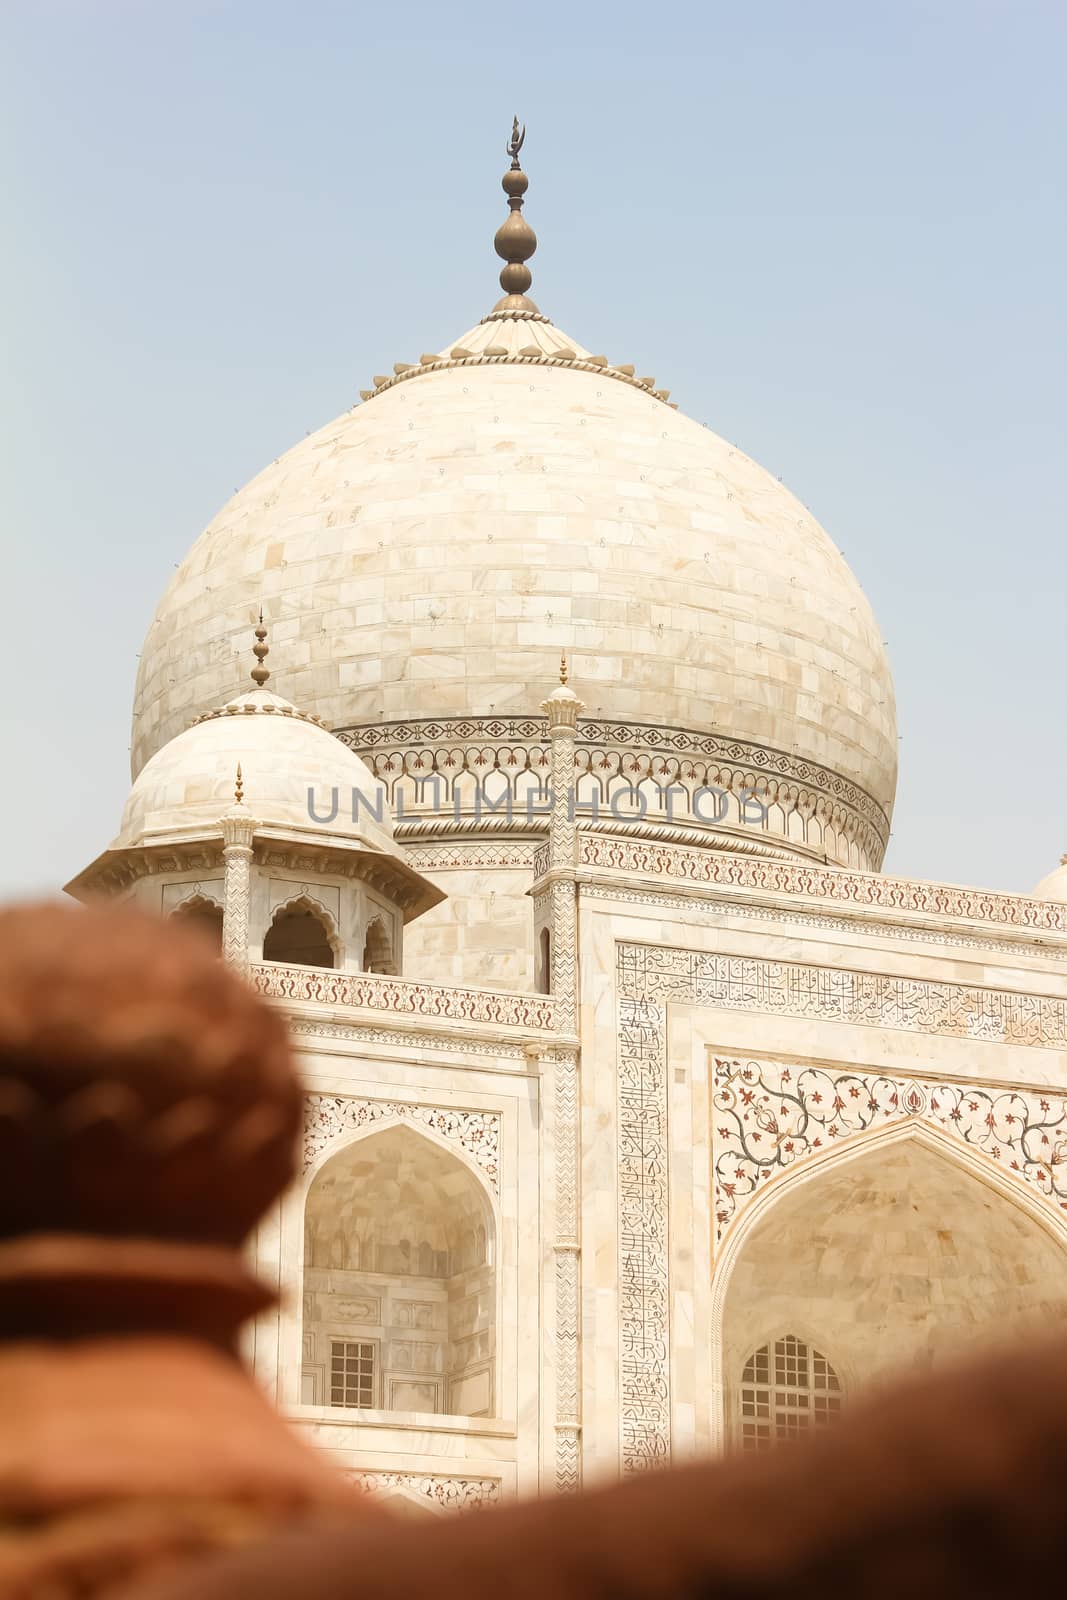 Closeup of dome of beautiful monument Taj Mahal, Agra, India